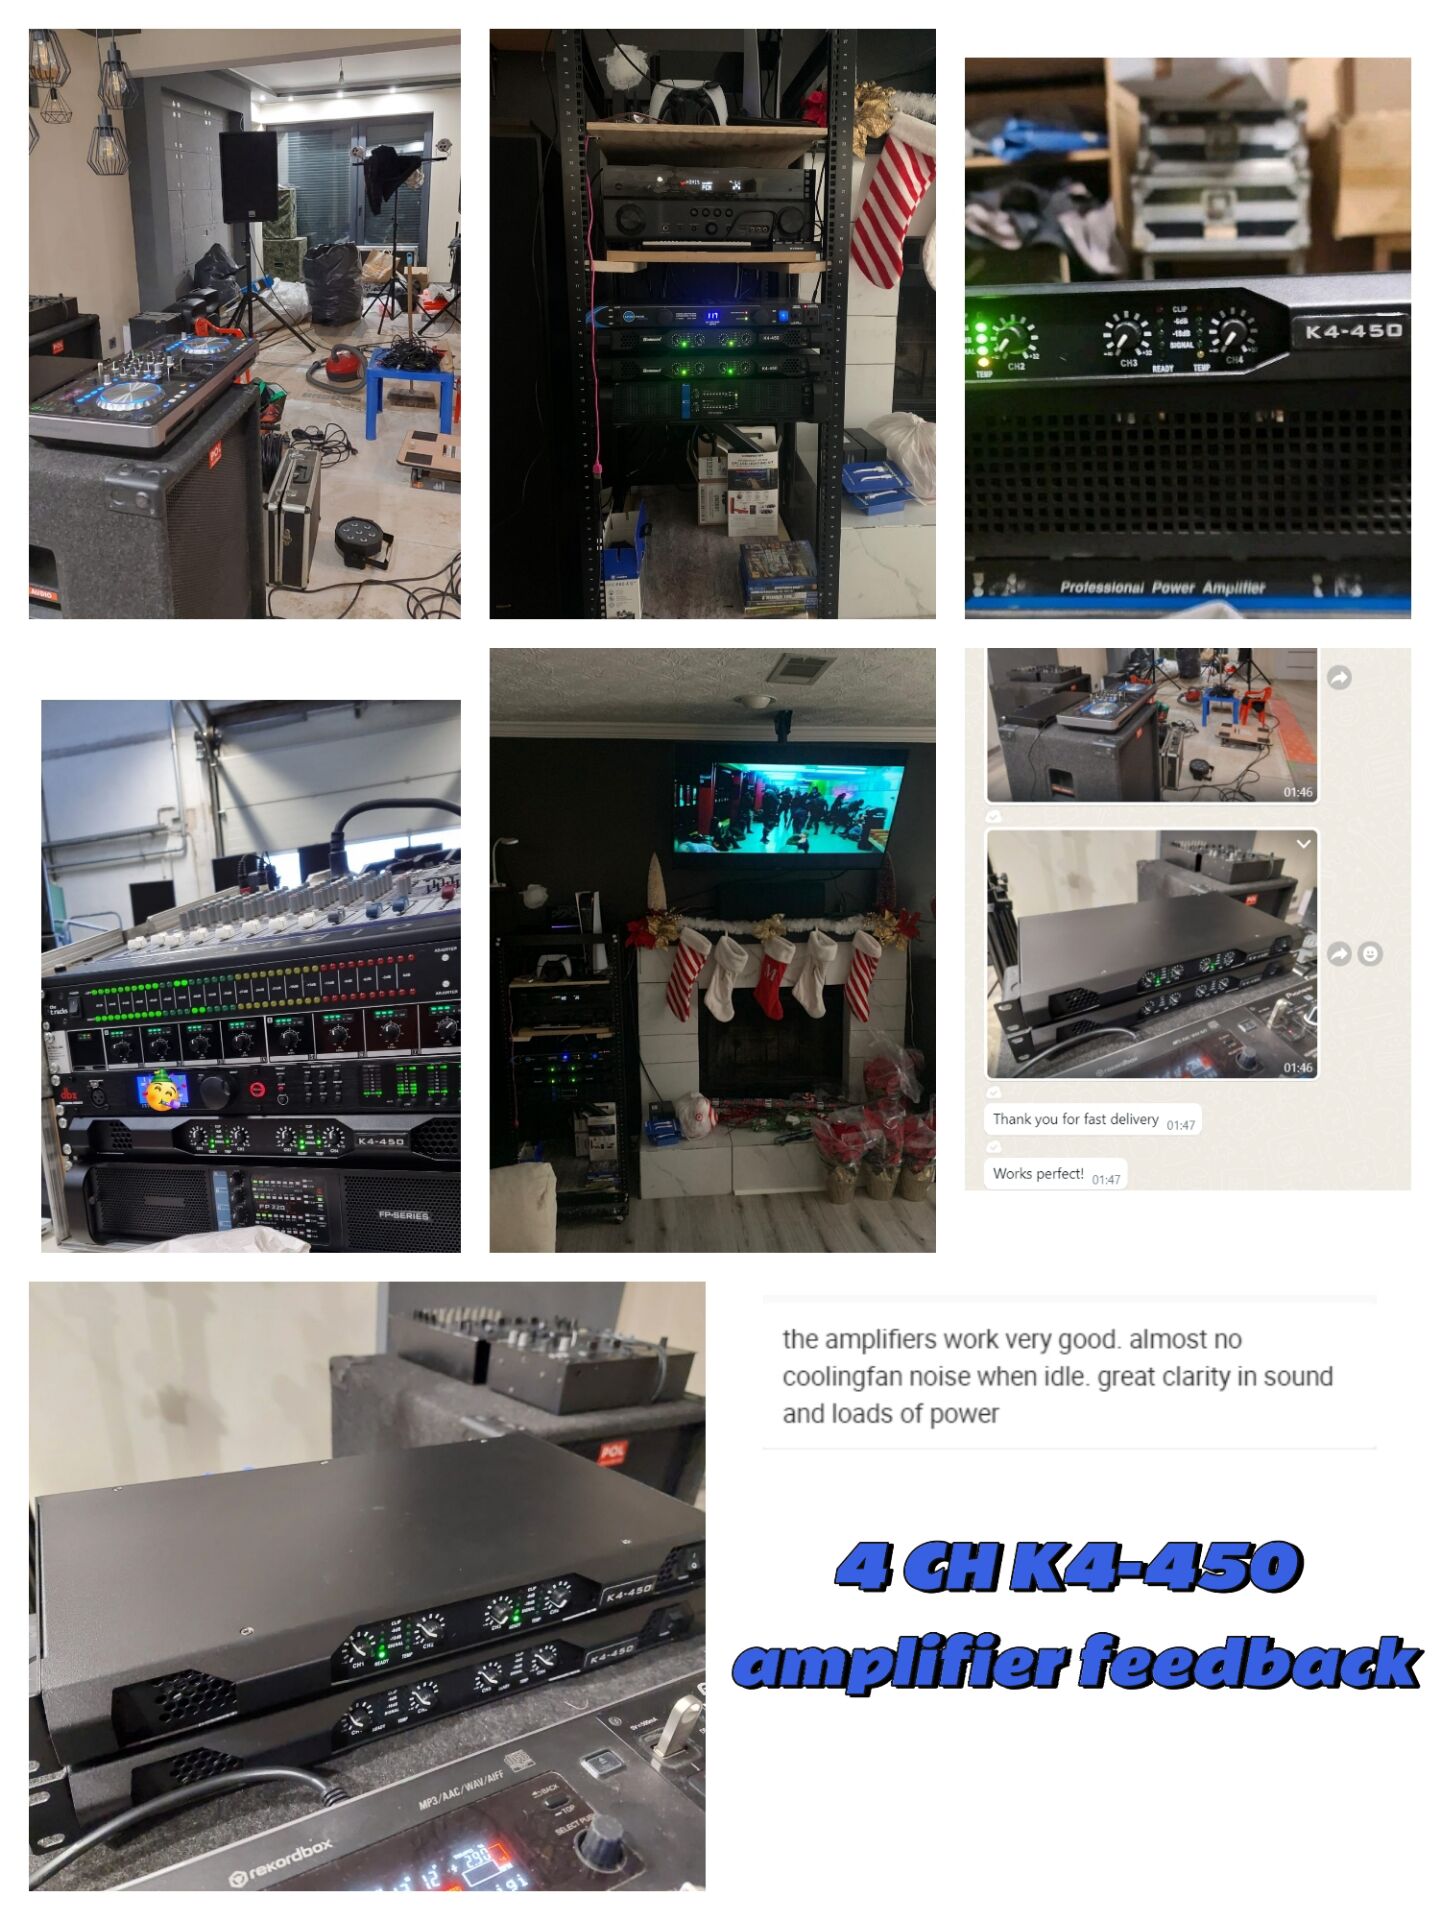 Digital amplifier K4-450 no coolingfan noise when idle